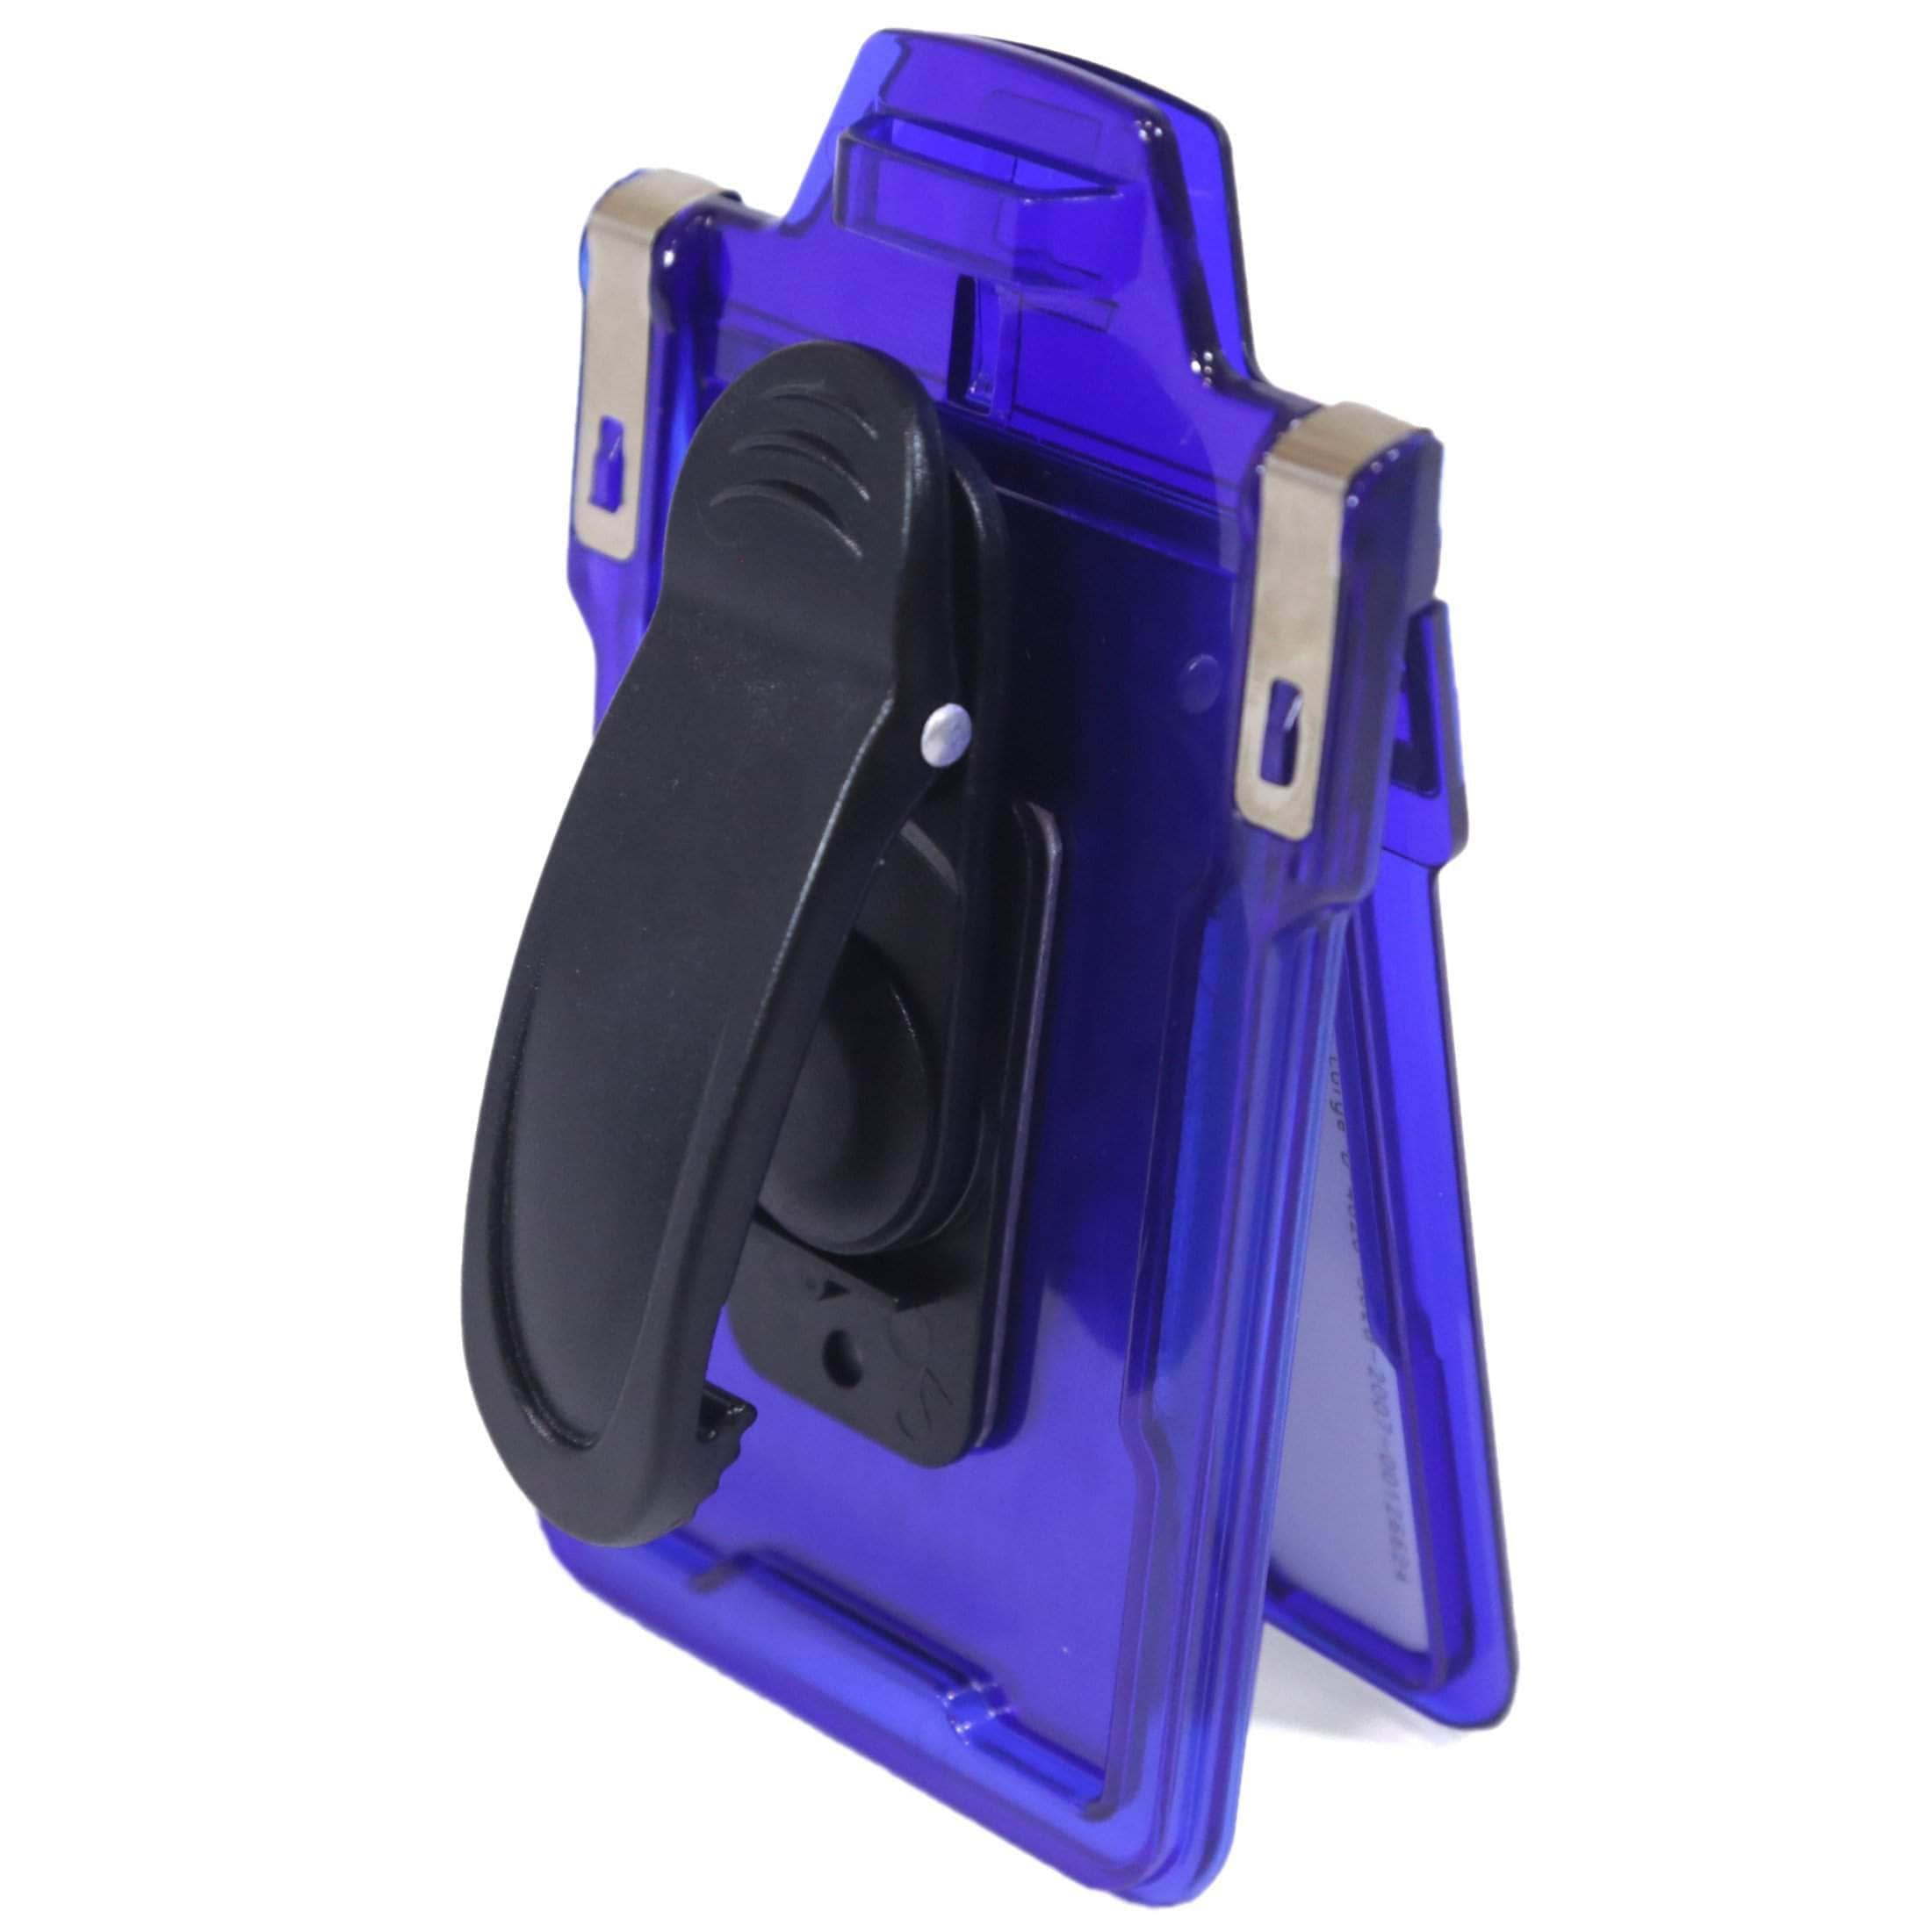 ID Stronghold Badgeholder Blue Secure Badge Holder Classic Vertical 1 Card Holder With Belt Clip